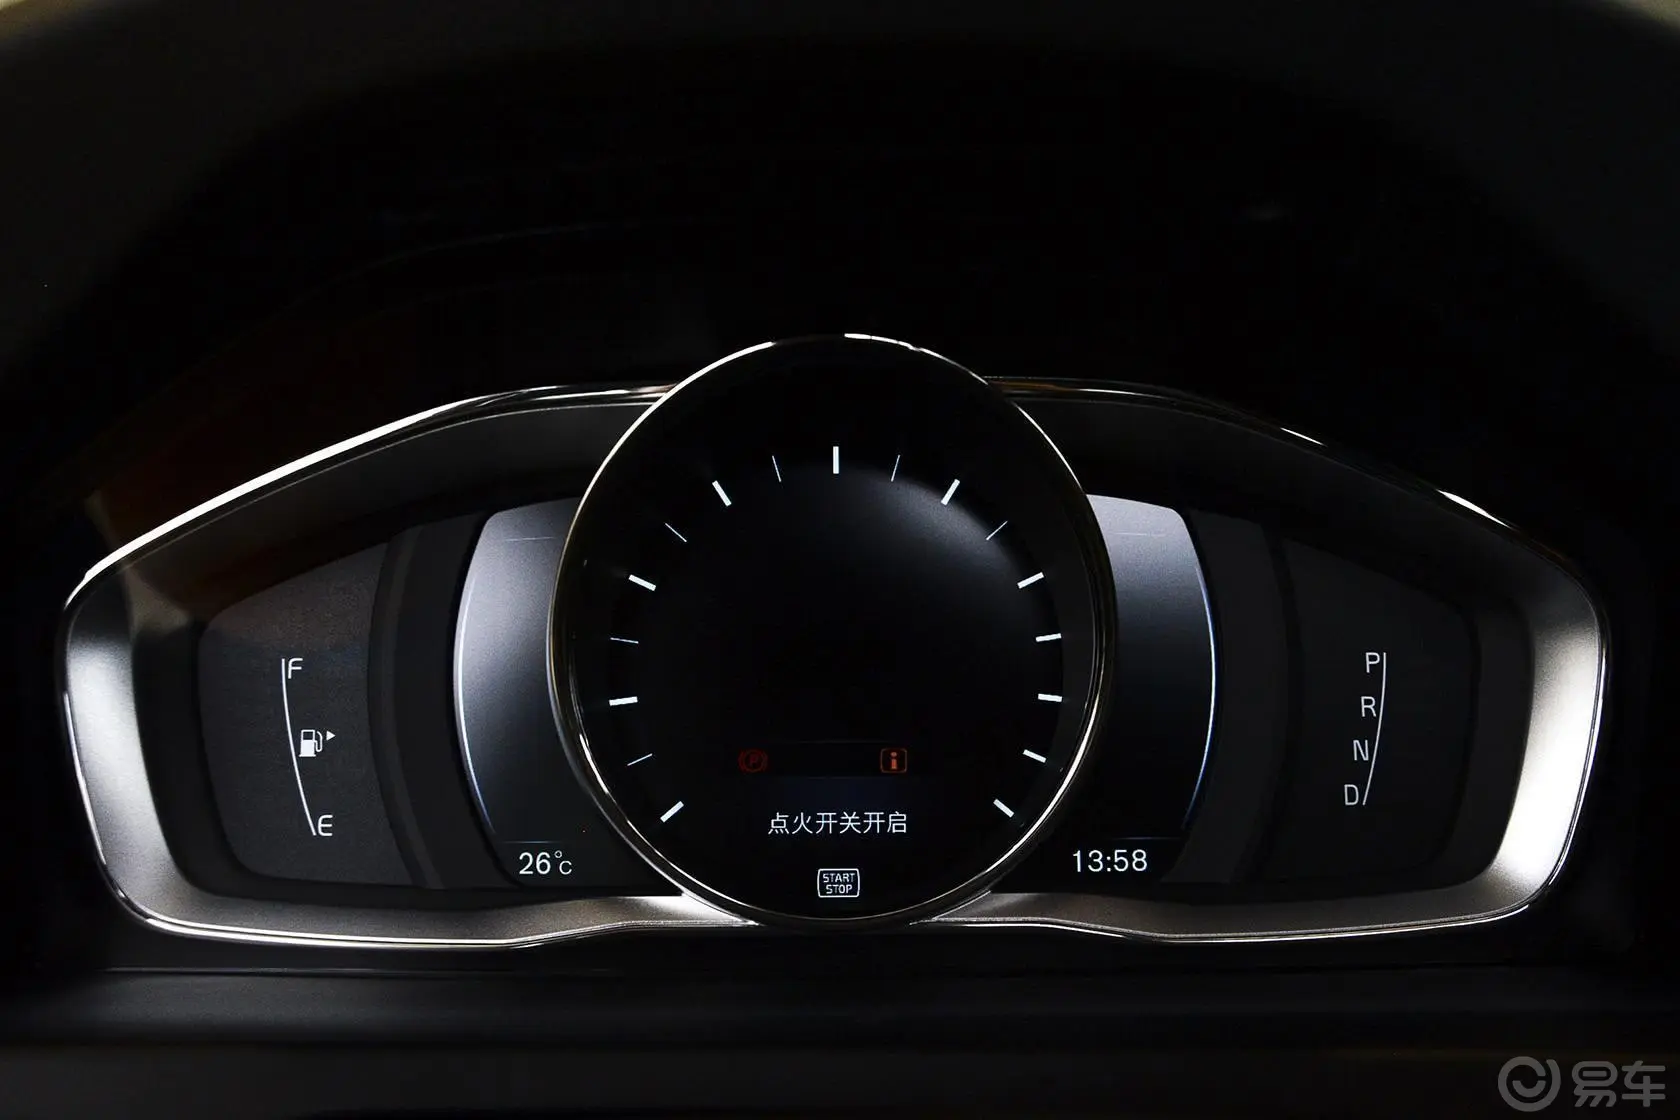 沃尔沃V60Cross Country 2.5T T6 AWD仪表盘背光显示